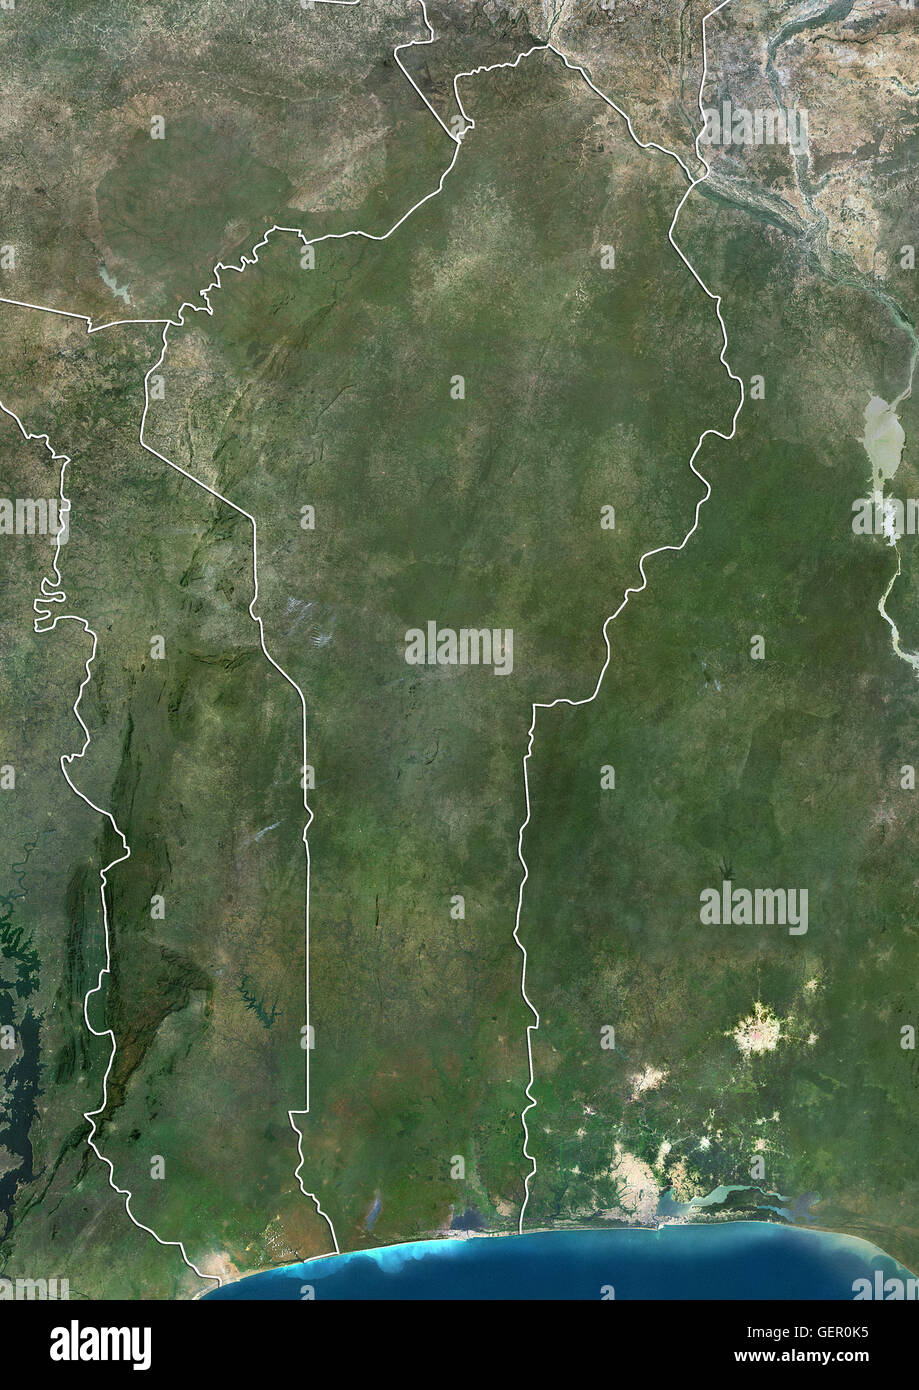 Satellitenansicht von Benin (mit Ländergrenzen). Dieses Bild wurde aus Daten von Landsat-Satelliten erworben erstellt. Stockfoto